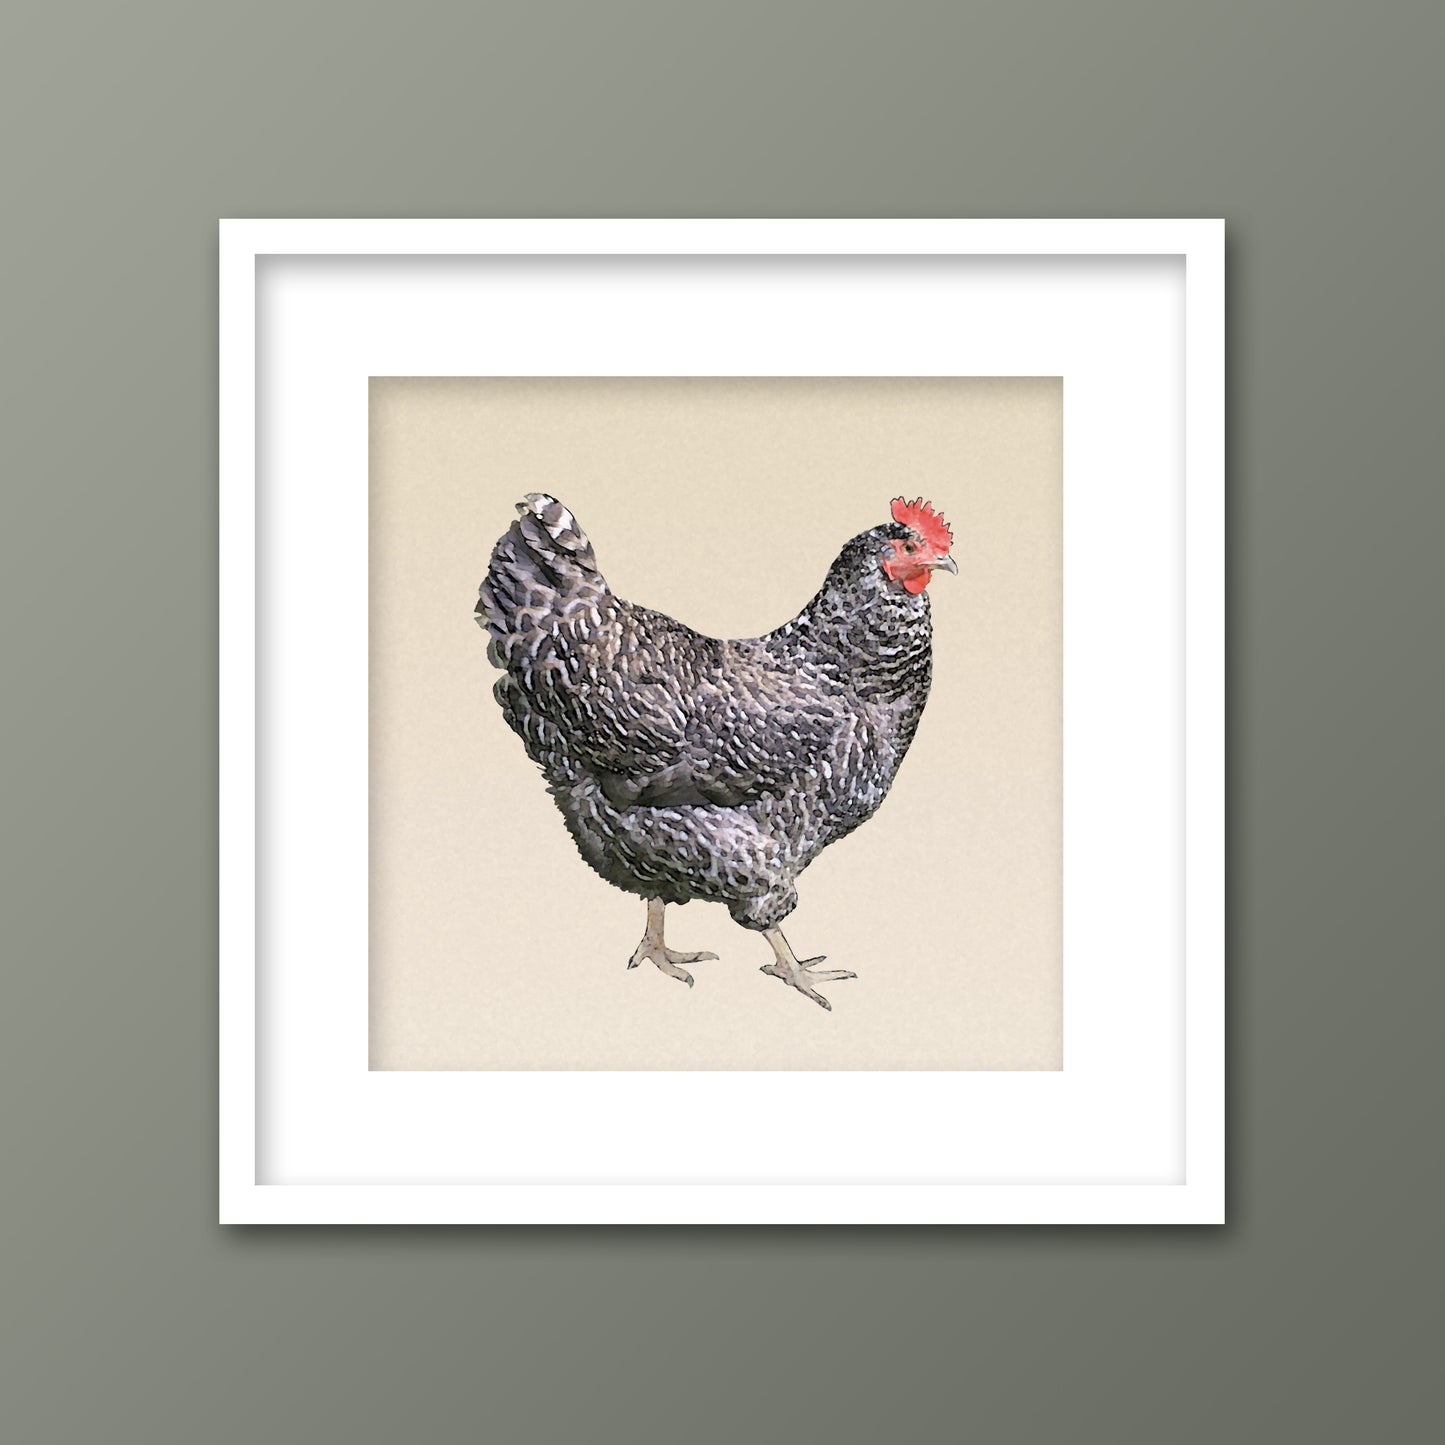 Set of 3 Framed Chickens Fine Art Prints